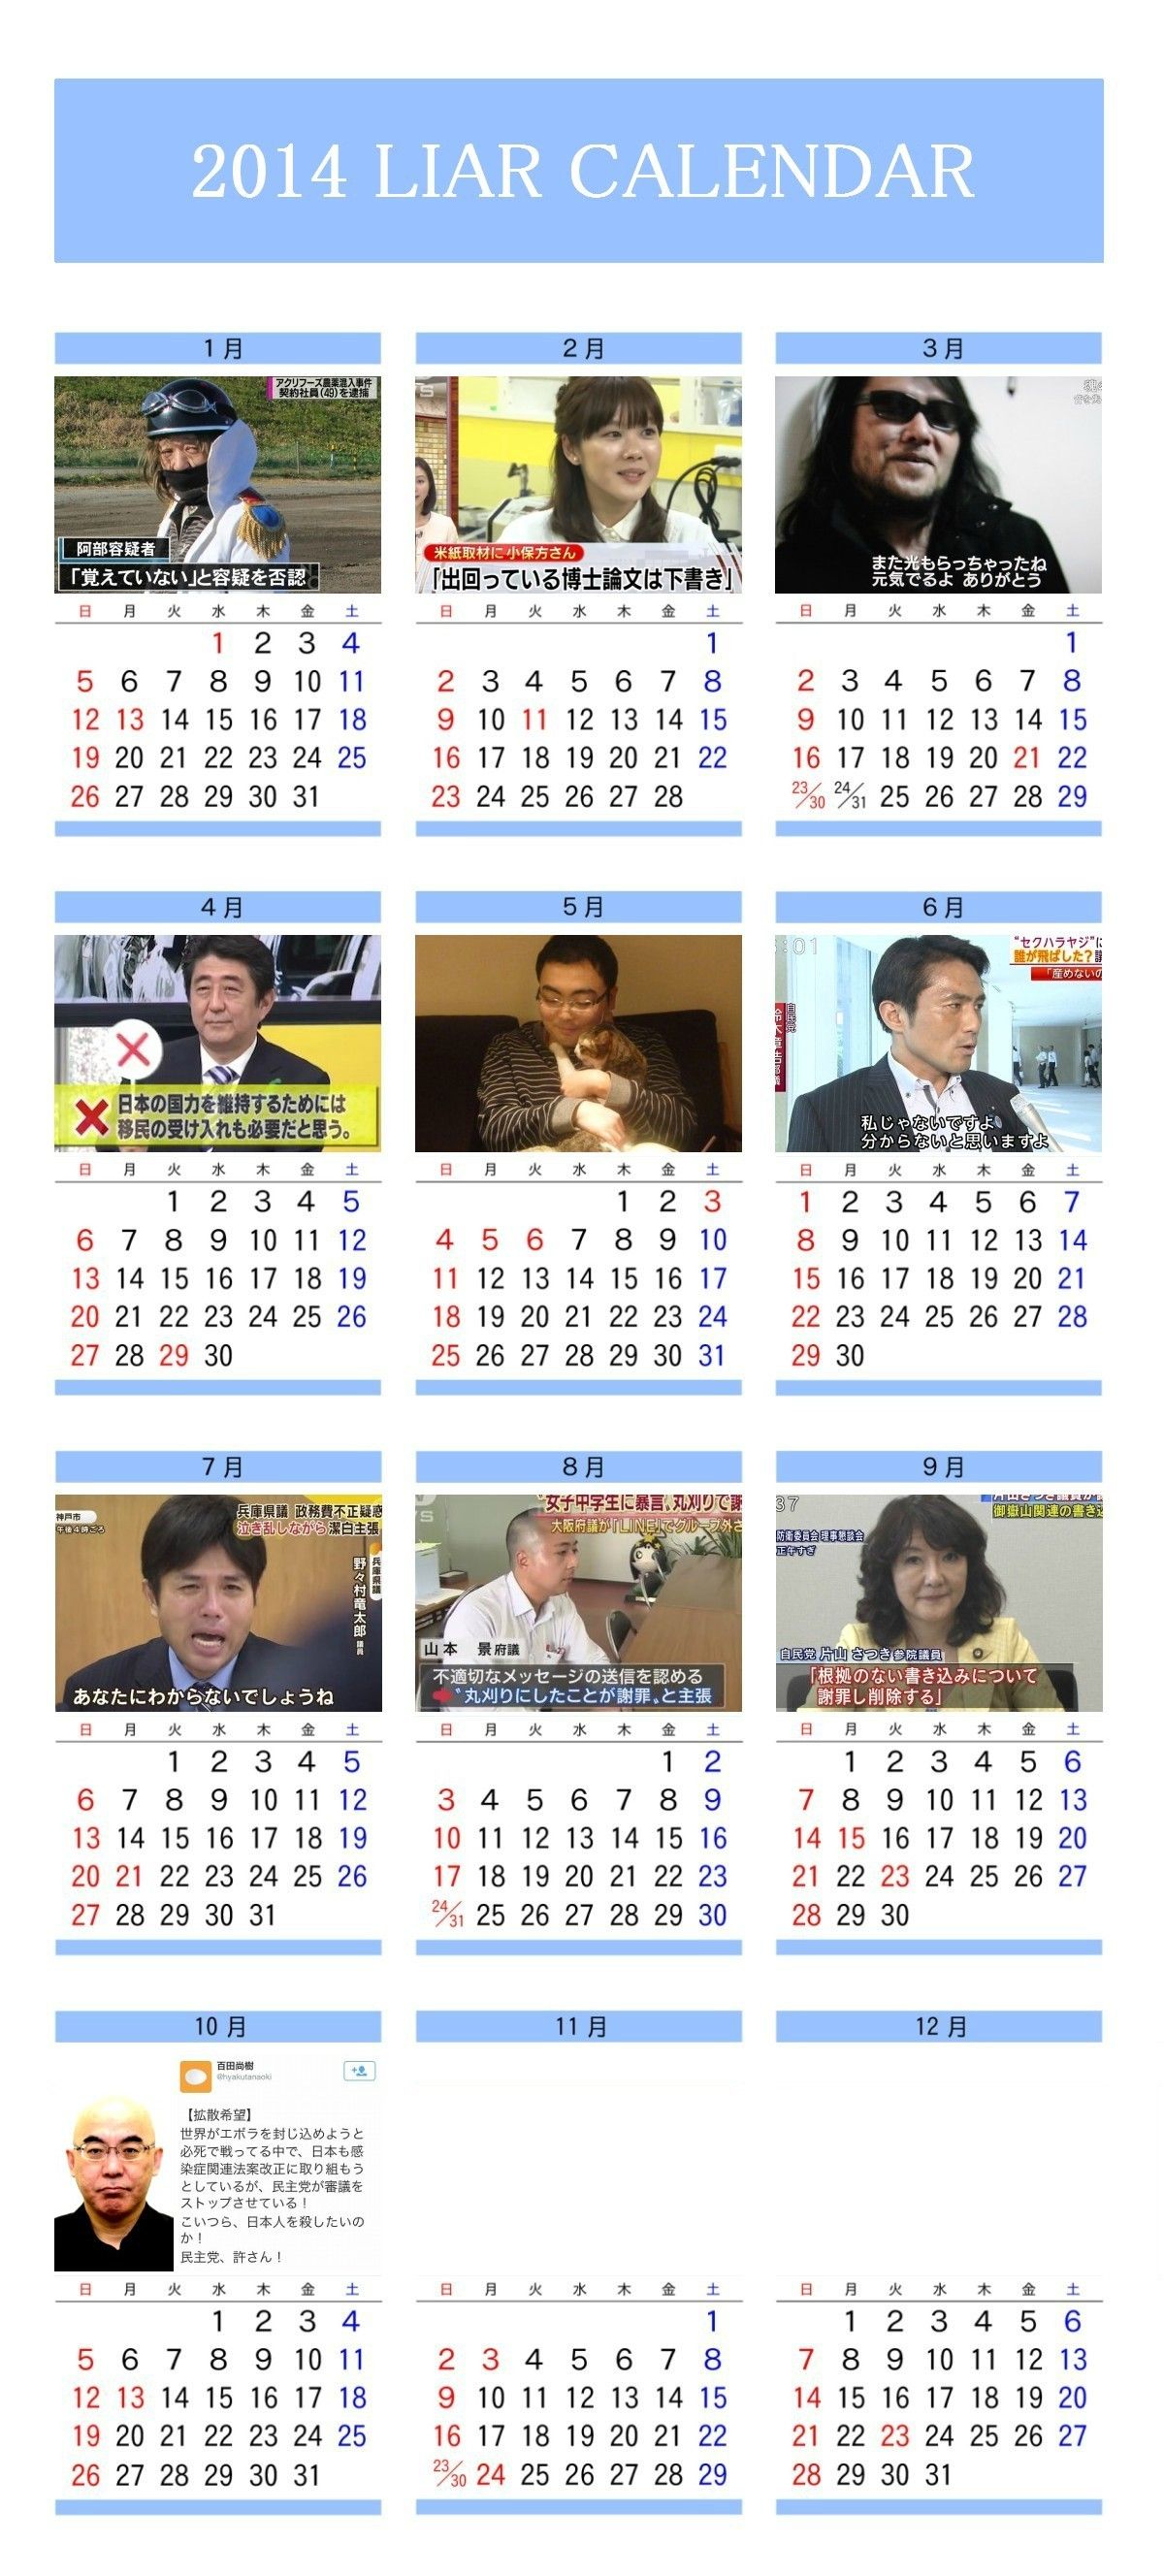 2014年 嘘つきカレンダー 今年の有名人や犯罪者の顔一覧完成 12月がまさかのアレｗｗｗ 画像あり Newsまとめもりー 2chまとめブログ